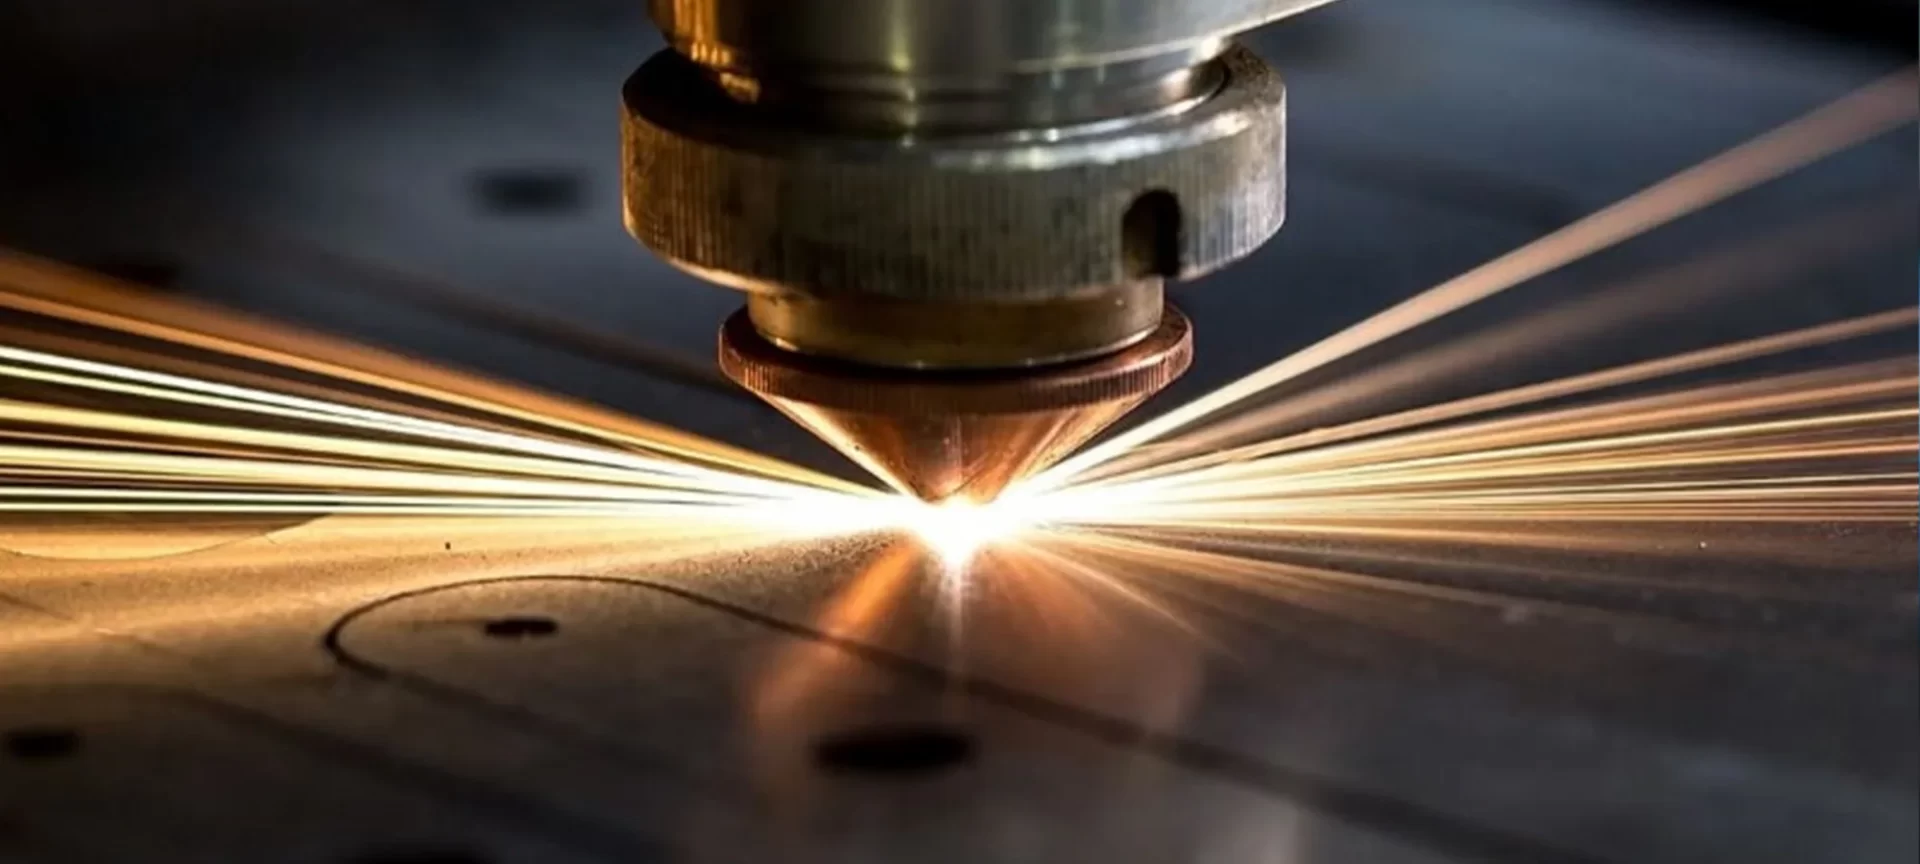 metal laser cutting